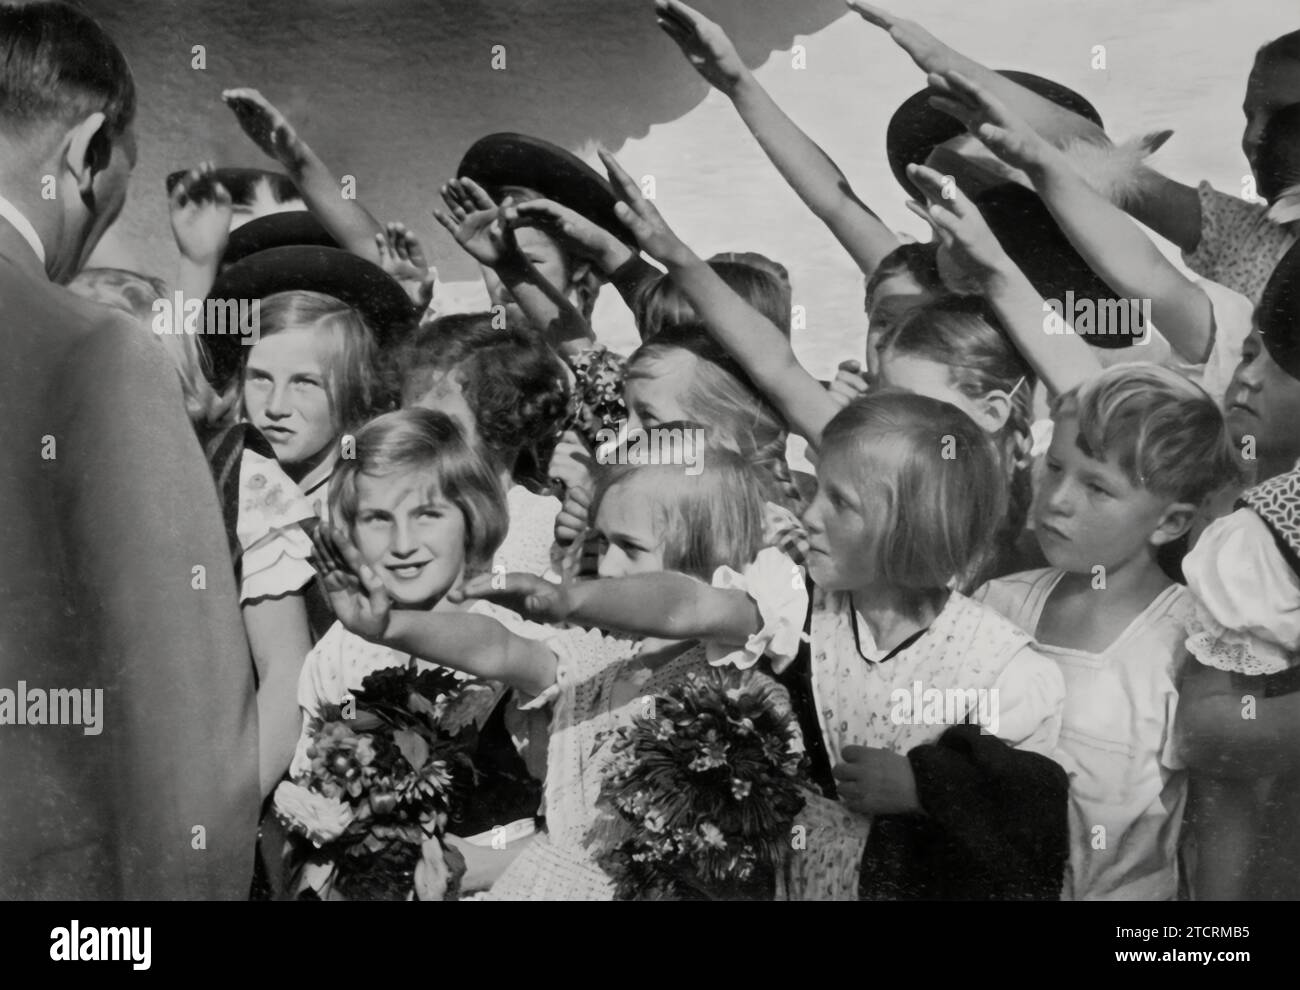 In der Kinderhände wird Adolf Hitler gesehen, wie er Kinder grüßt und Blumen von ihnen erhält. Dieses Bild ist ein ergreifendes Beispiel dafür, wie das Nazi-Regime orchestrierte Interaktionen mit Jugendlichen nutzte, um ein öffentliches Bild von Wohlwollen und Zugänglichkeit zu pflegen. Der Akt der Annahme von Blumen von Kindern war ein verbreitetes Propagandawerkzeug, das Hitlers Image weicher machen und die Idee eines pflegenden, väterlichen Führers fördern sollte, der eng mit der jüngeren Generation verbunden ist. Stockfoto